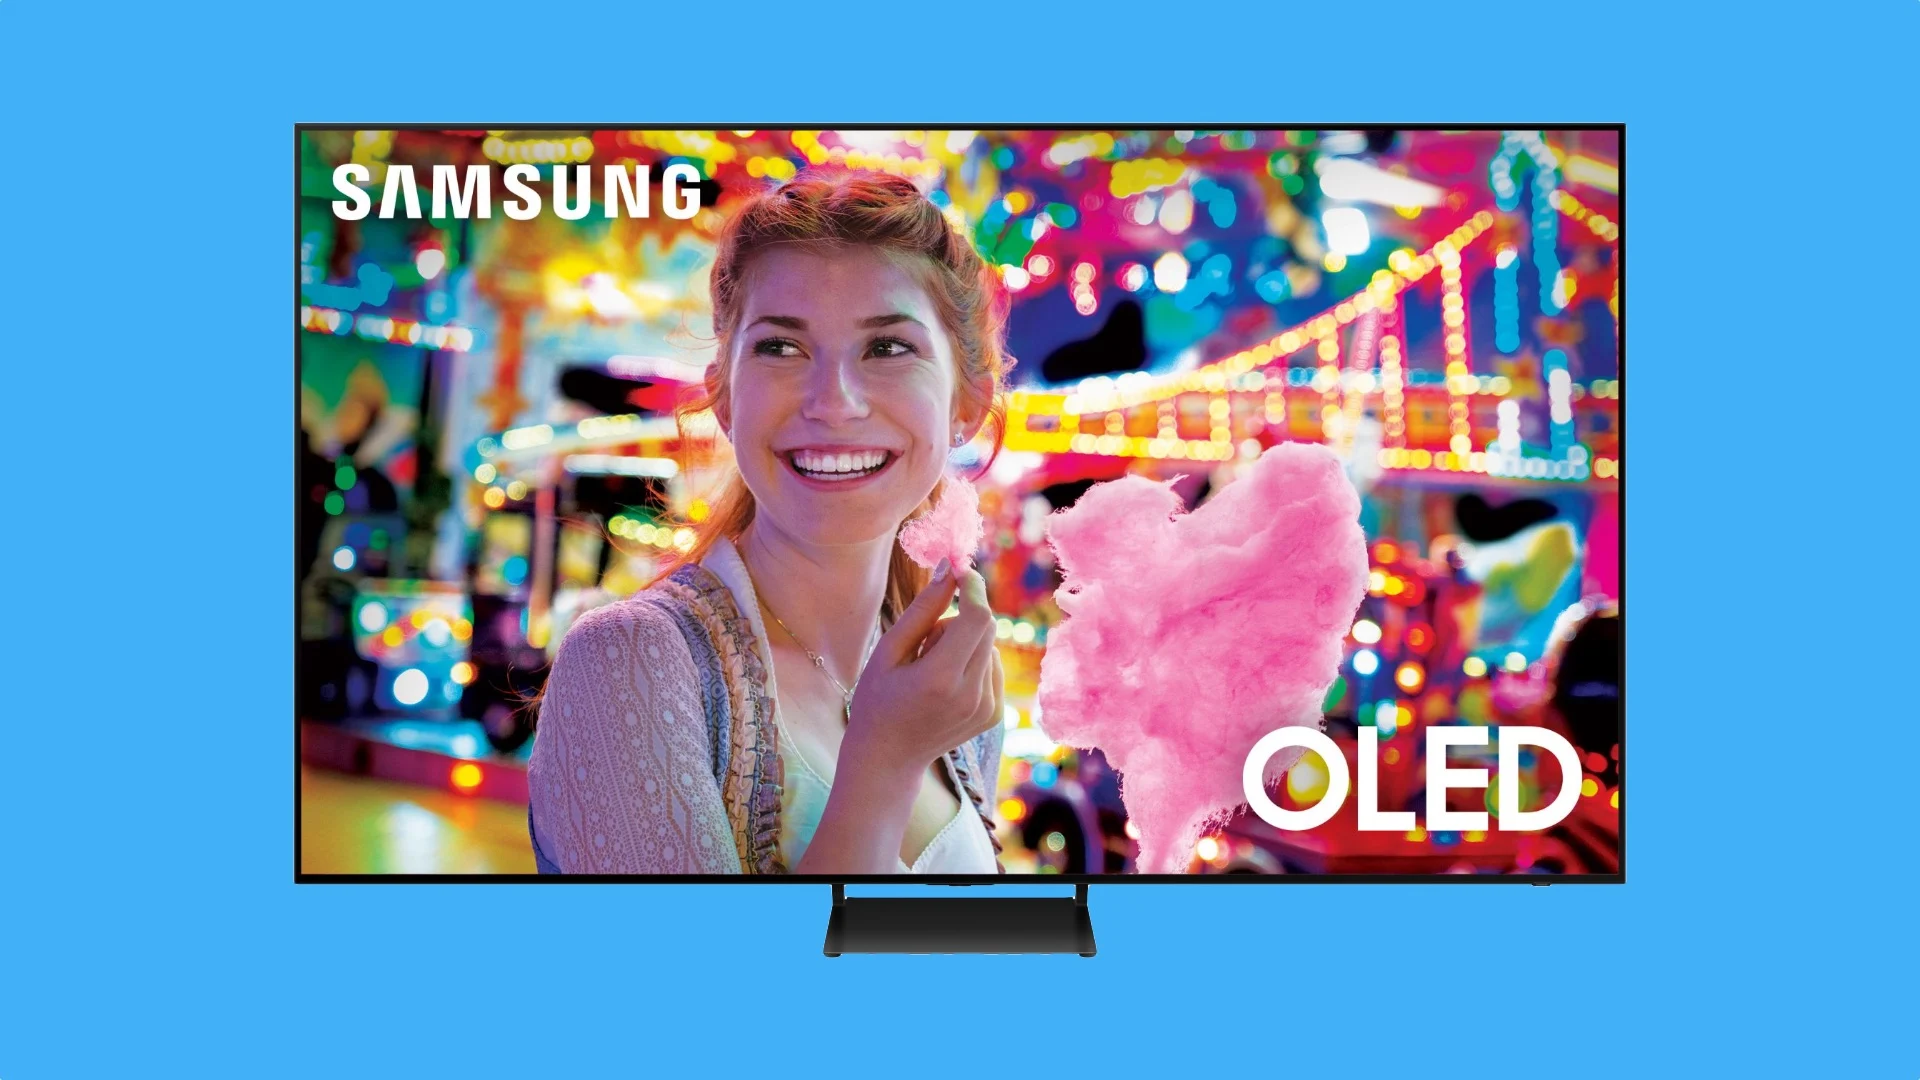 Samsung zapowiedział swój największy telewizor OLED w historii - zaprezentowano model QN83S90C z panelem LG o wartości 5400 USD